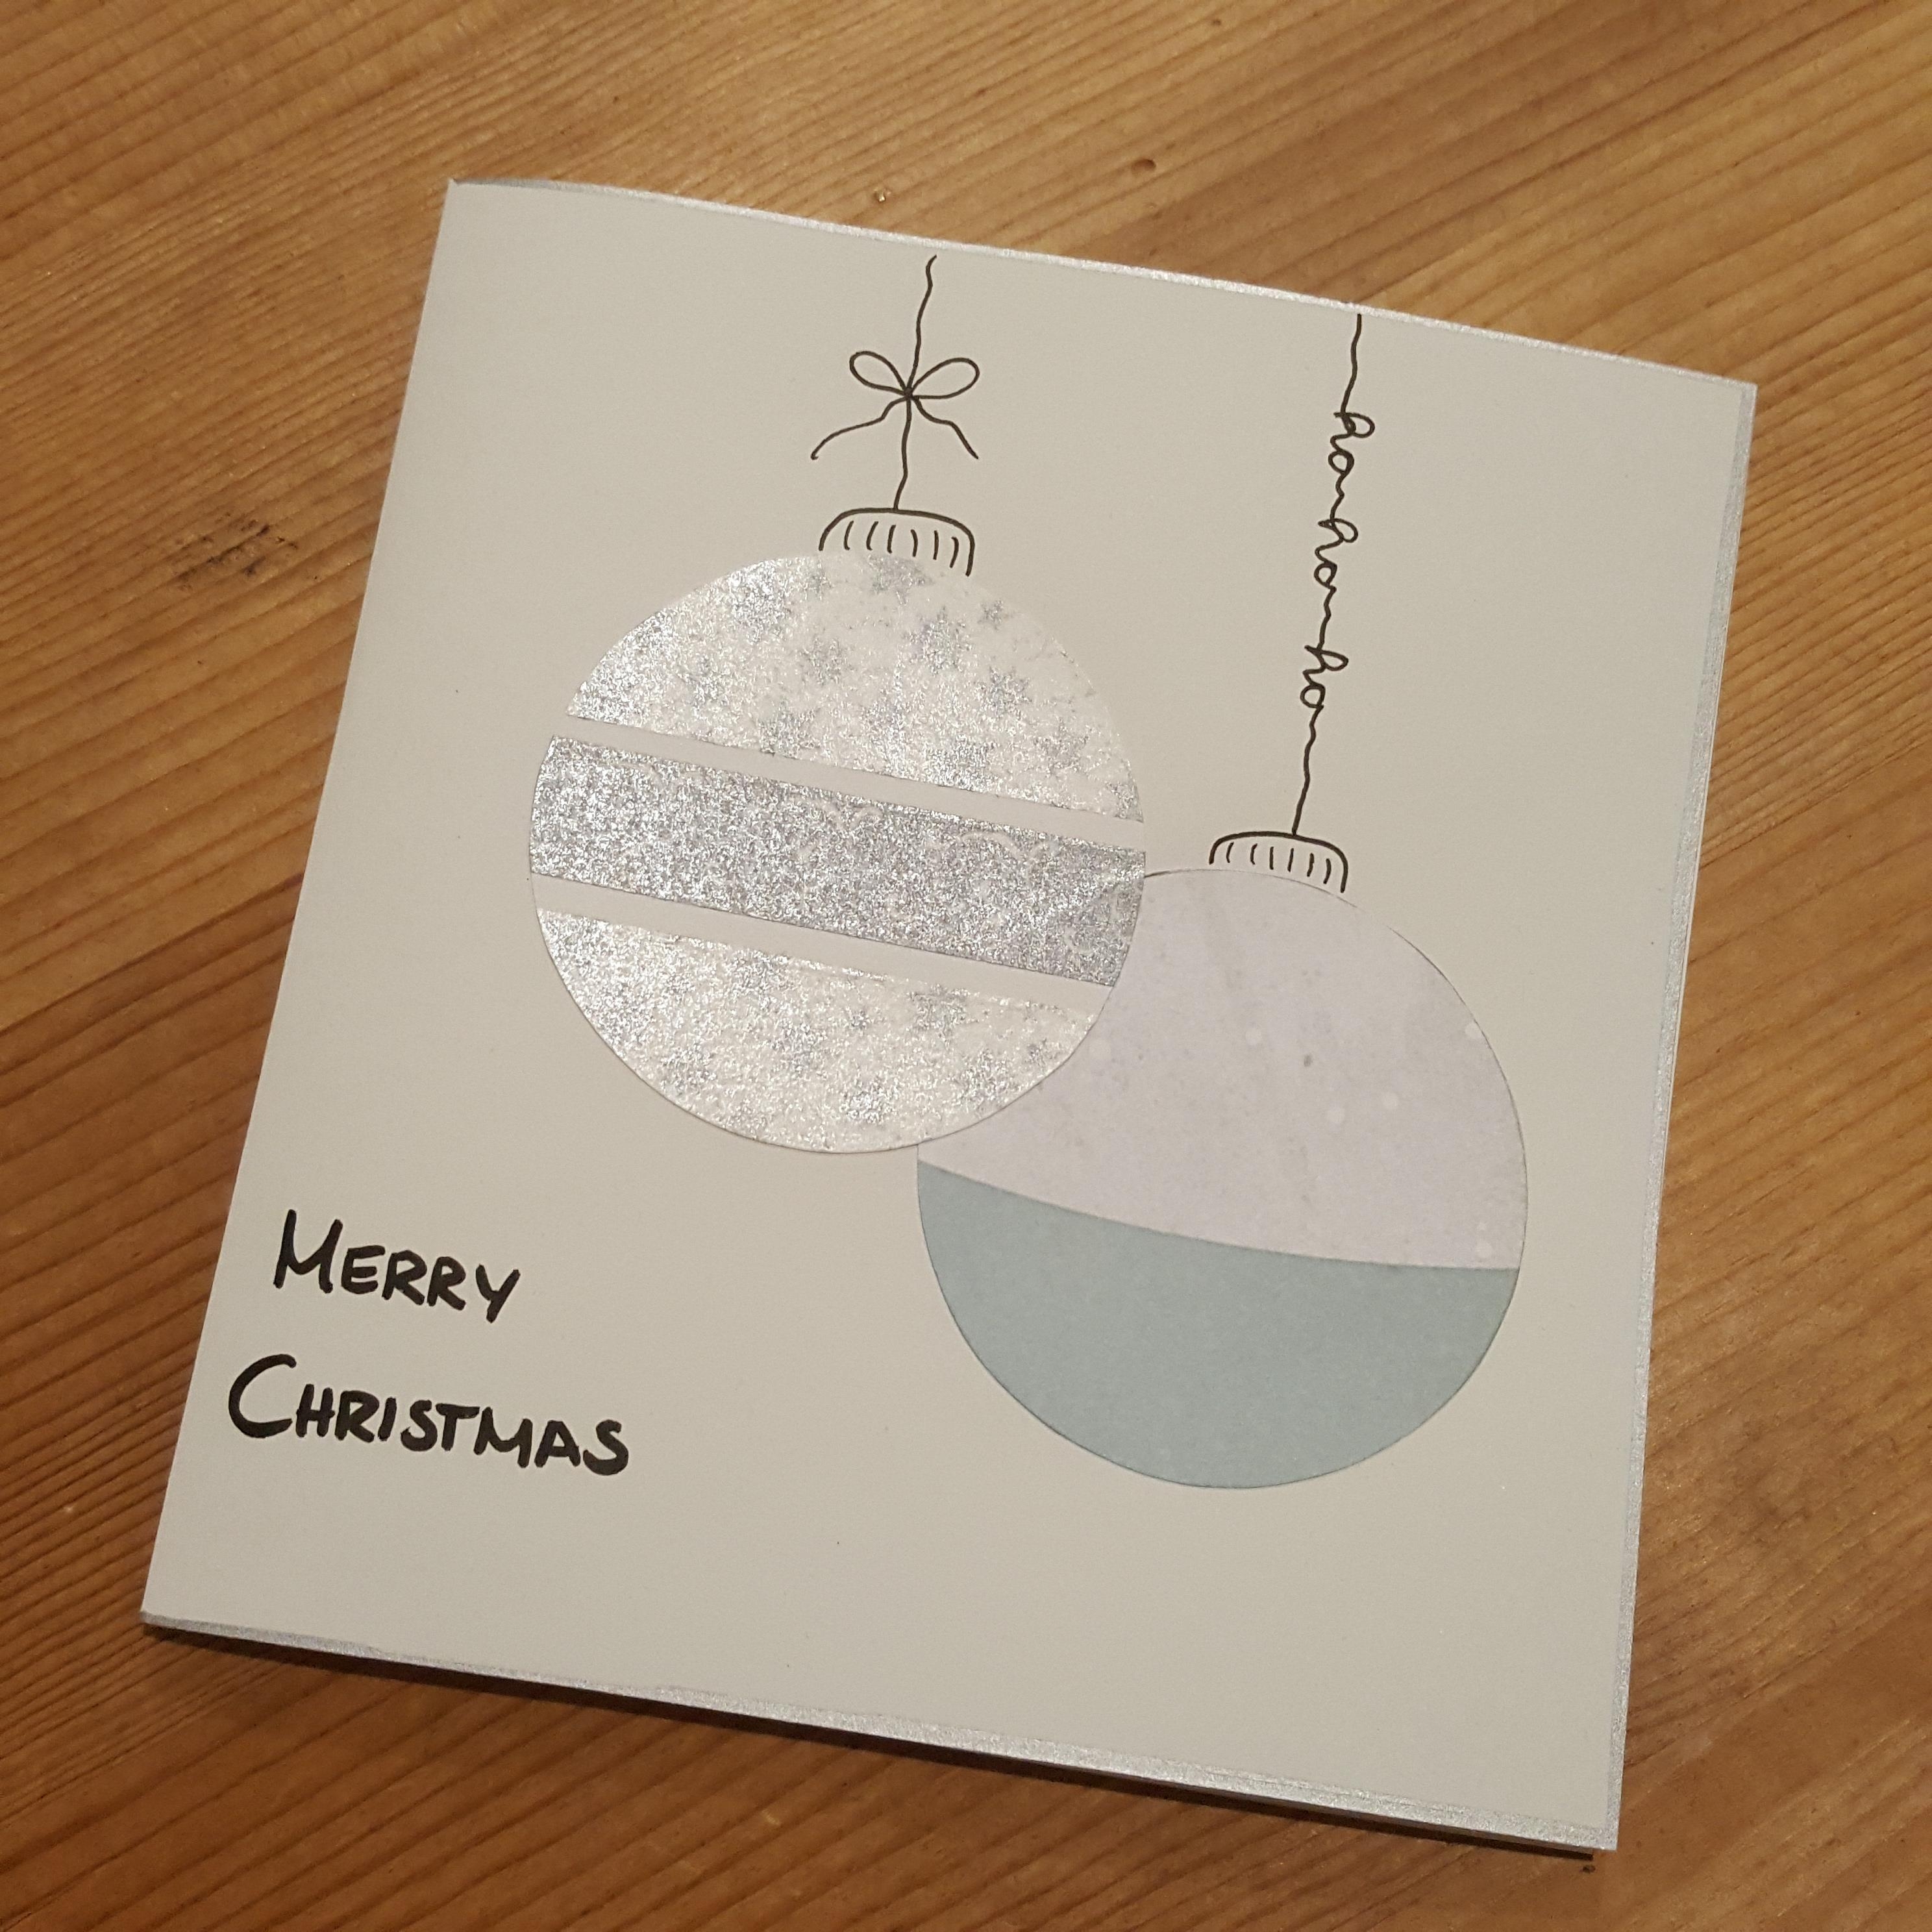 Dieses Jahr habe ich Weihnachtskarten selbst gebastelt und ganz klassisch mit der Post verschickt #diy #weihnachtskarten